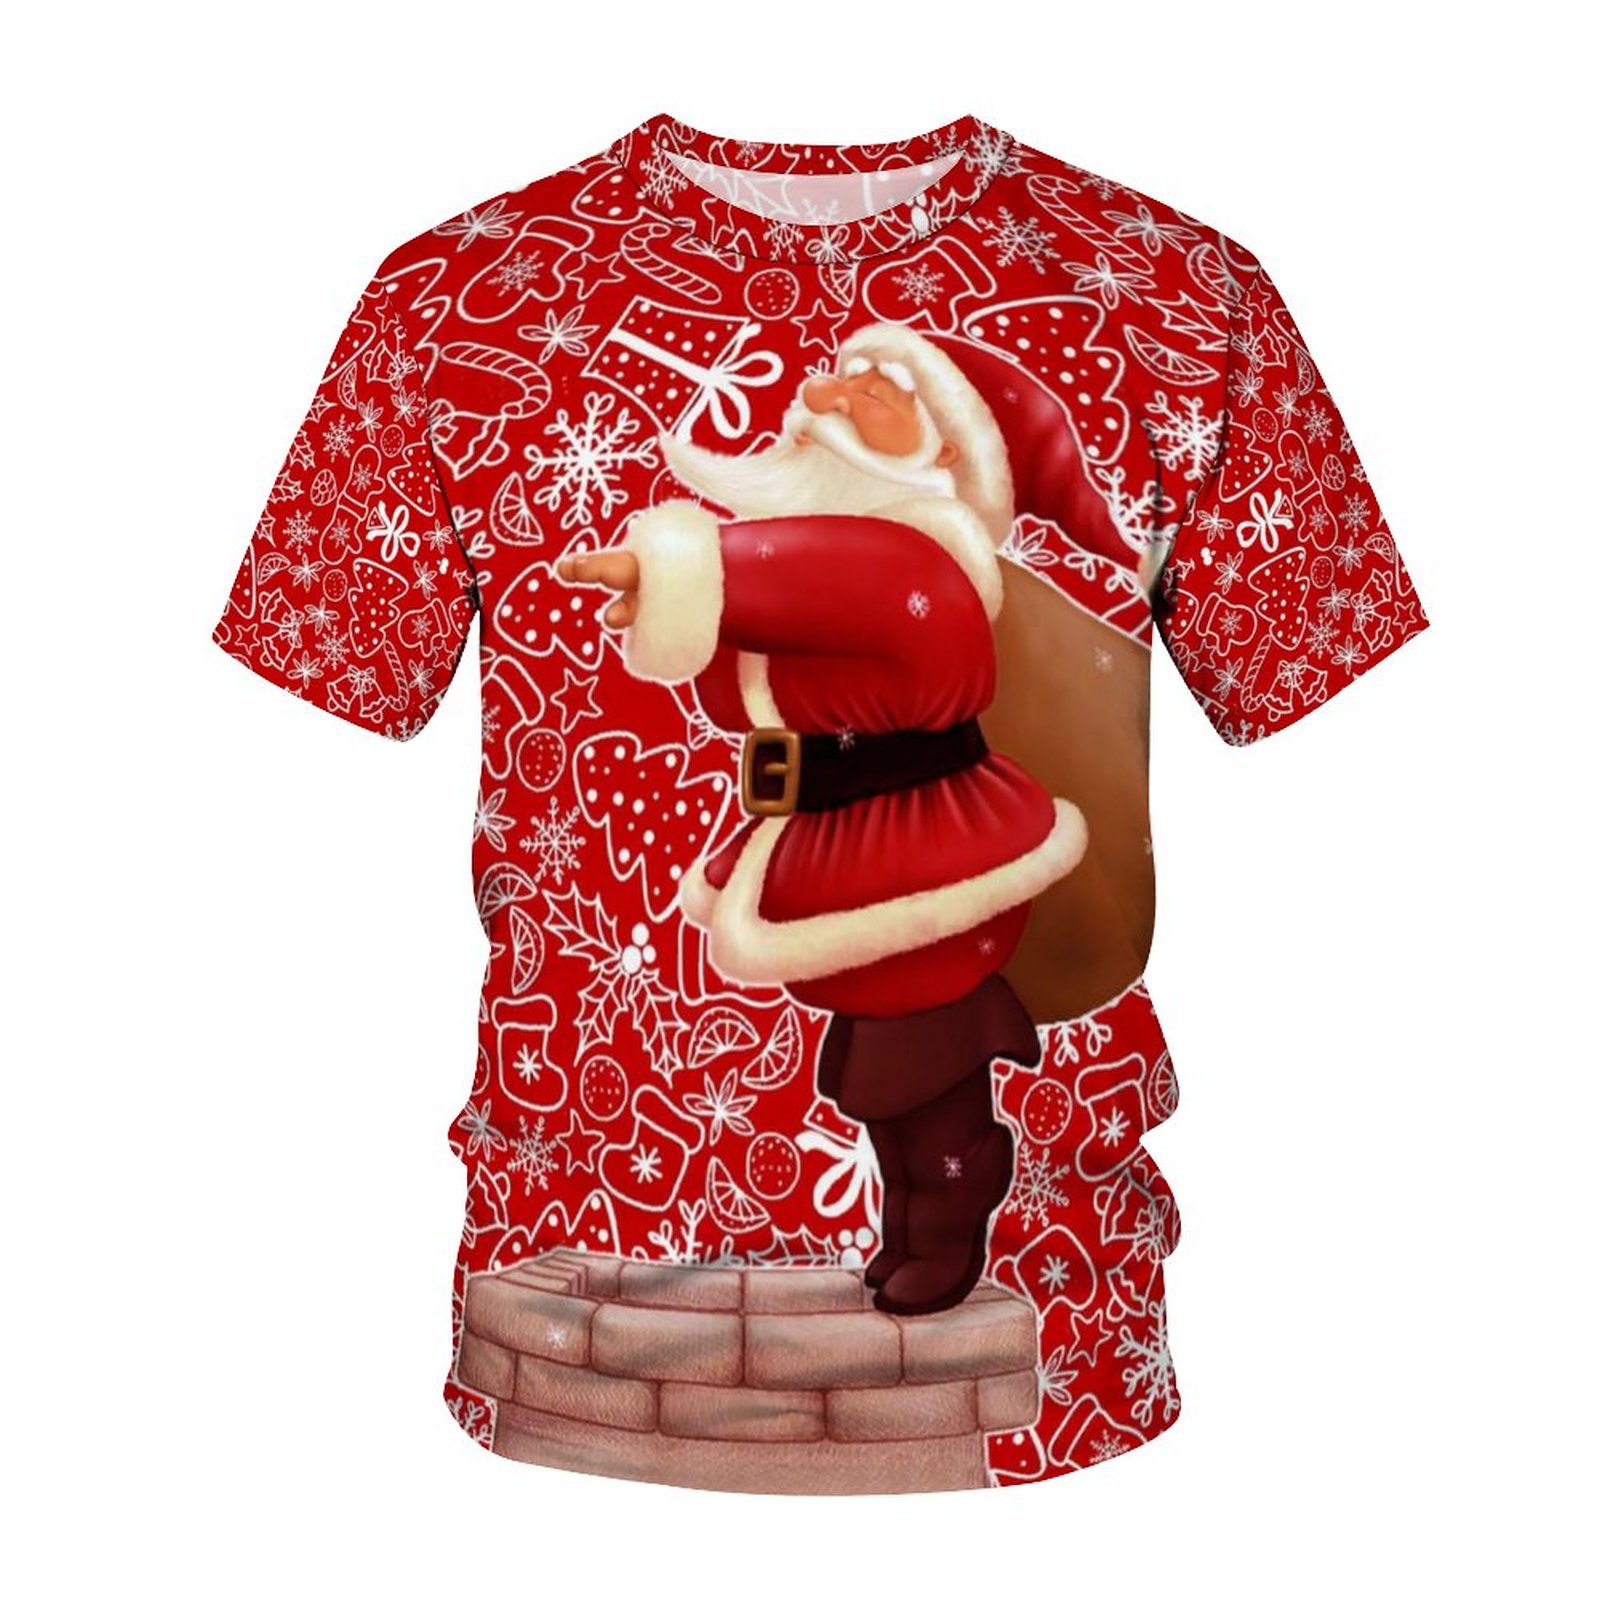 NOUVEAU CARNIVAL DE CHRIOT-CARNIVAL MENS'S T -SHIRT 3D Prince Santa Claus Vêtements Snowman Amosphère Côtes courtes.